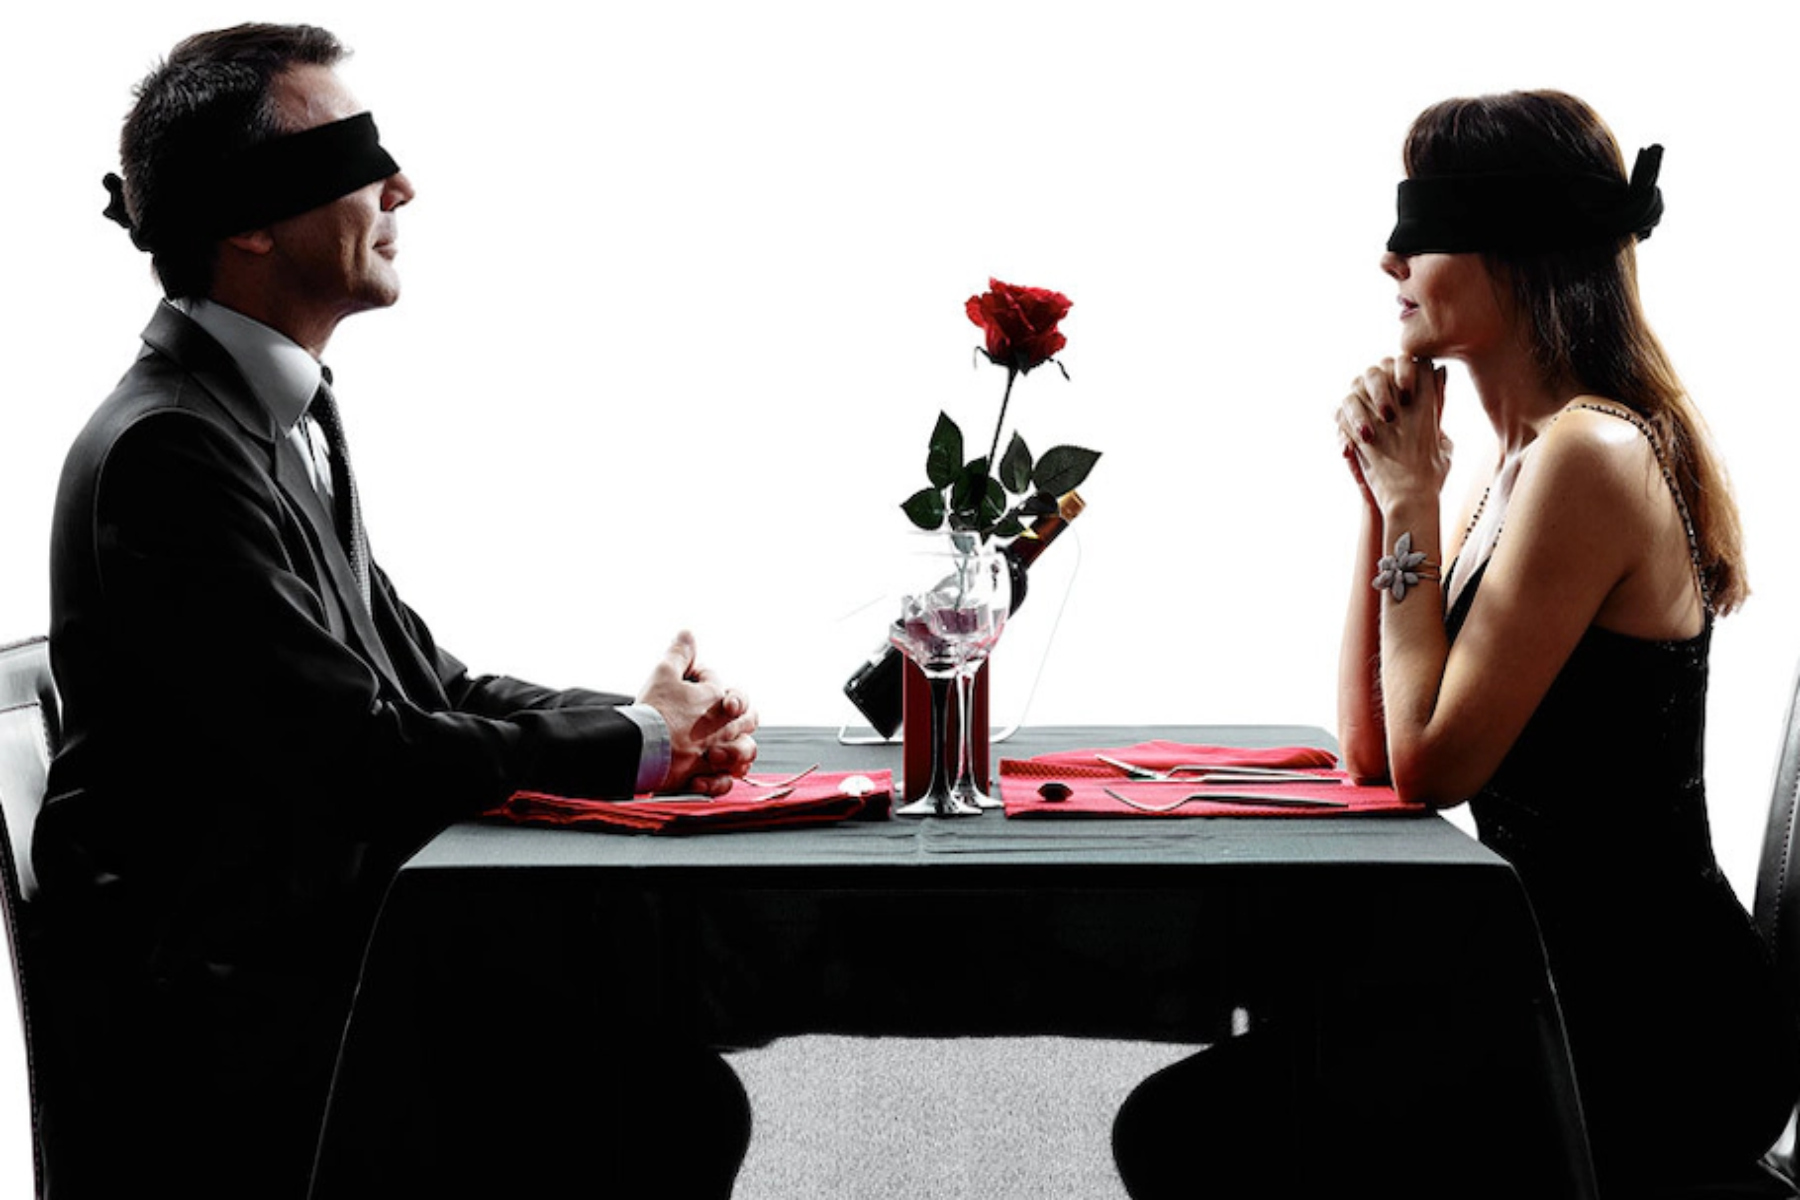 Ραντεβού: Γιατί τα ραντεβού στα τυφλά αποτελούν μια αξέχαστη εμπειρία;